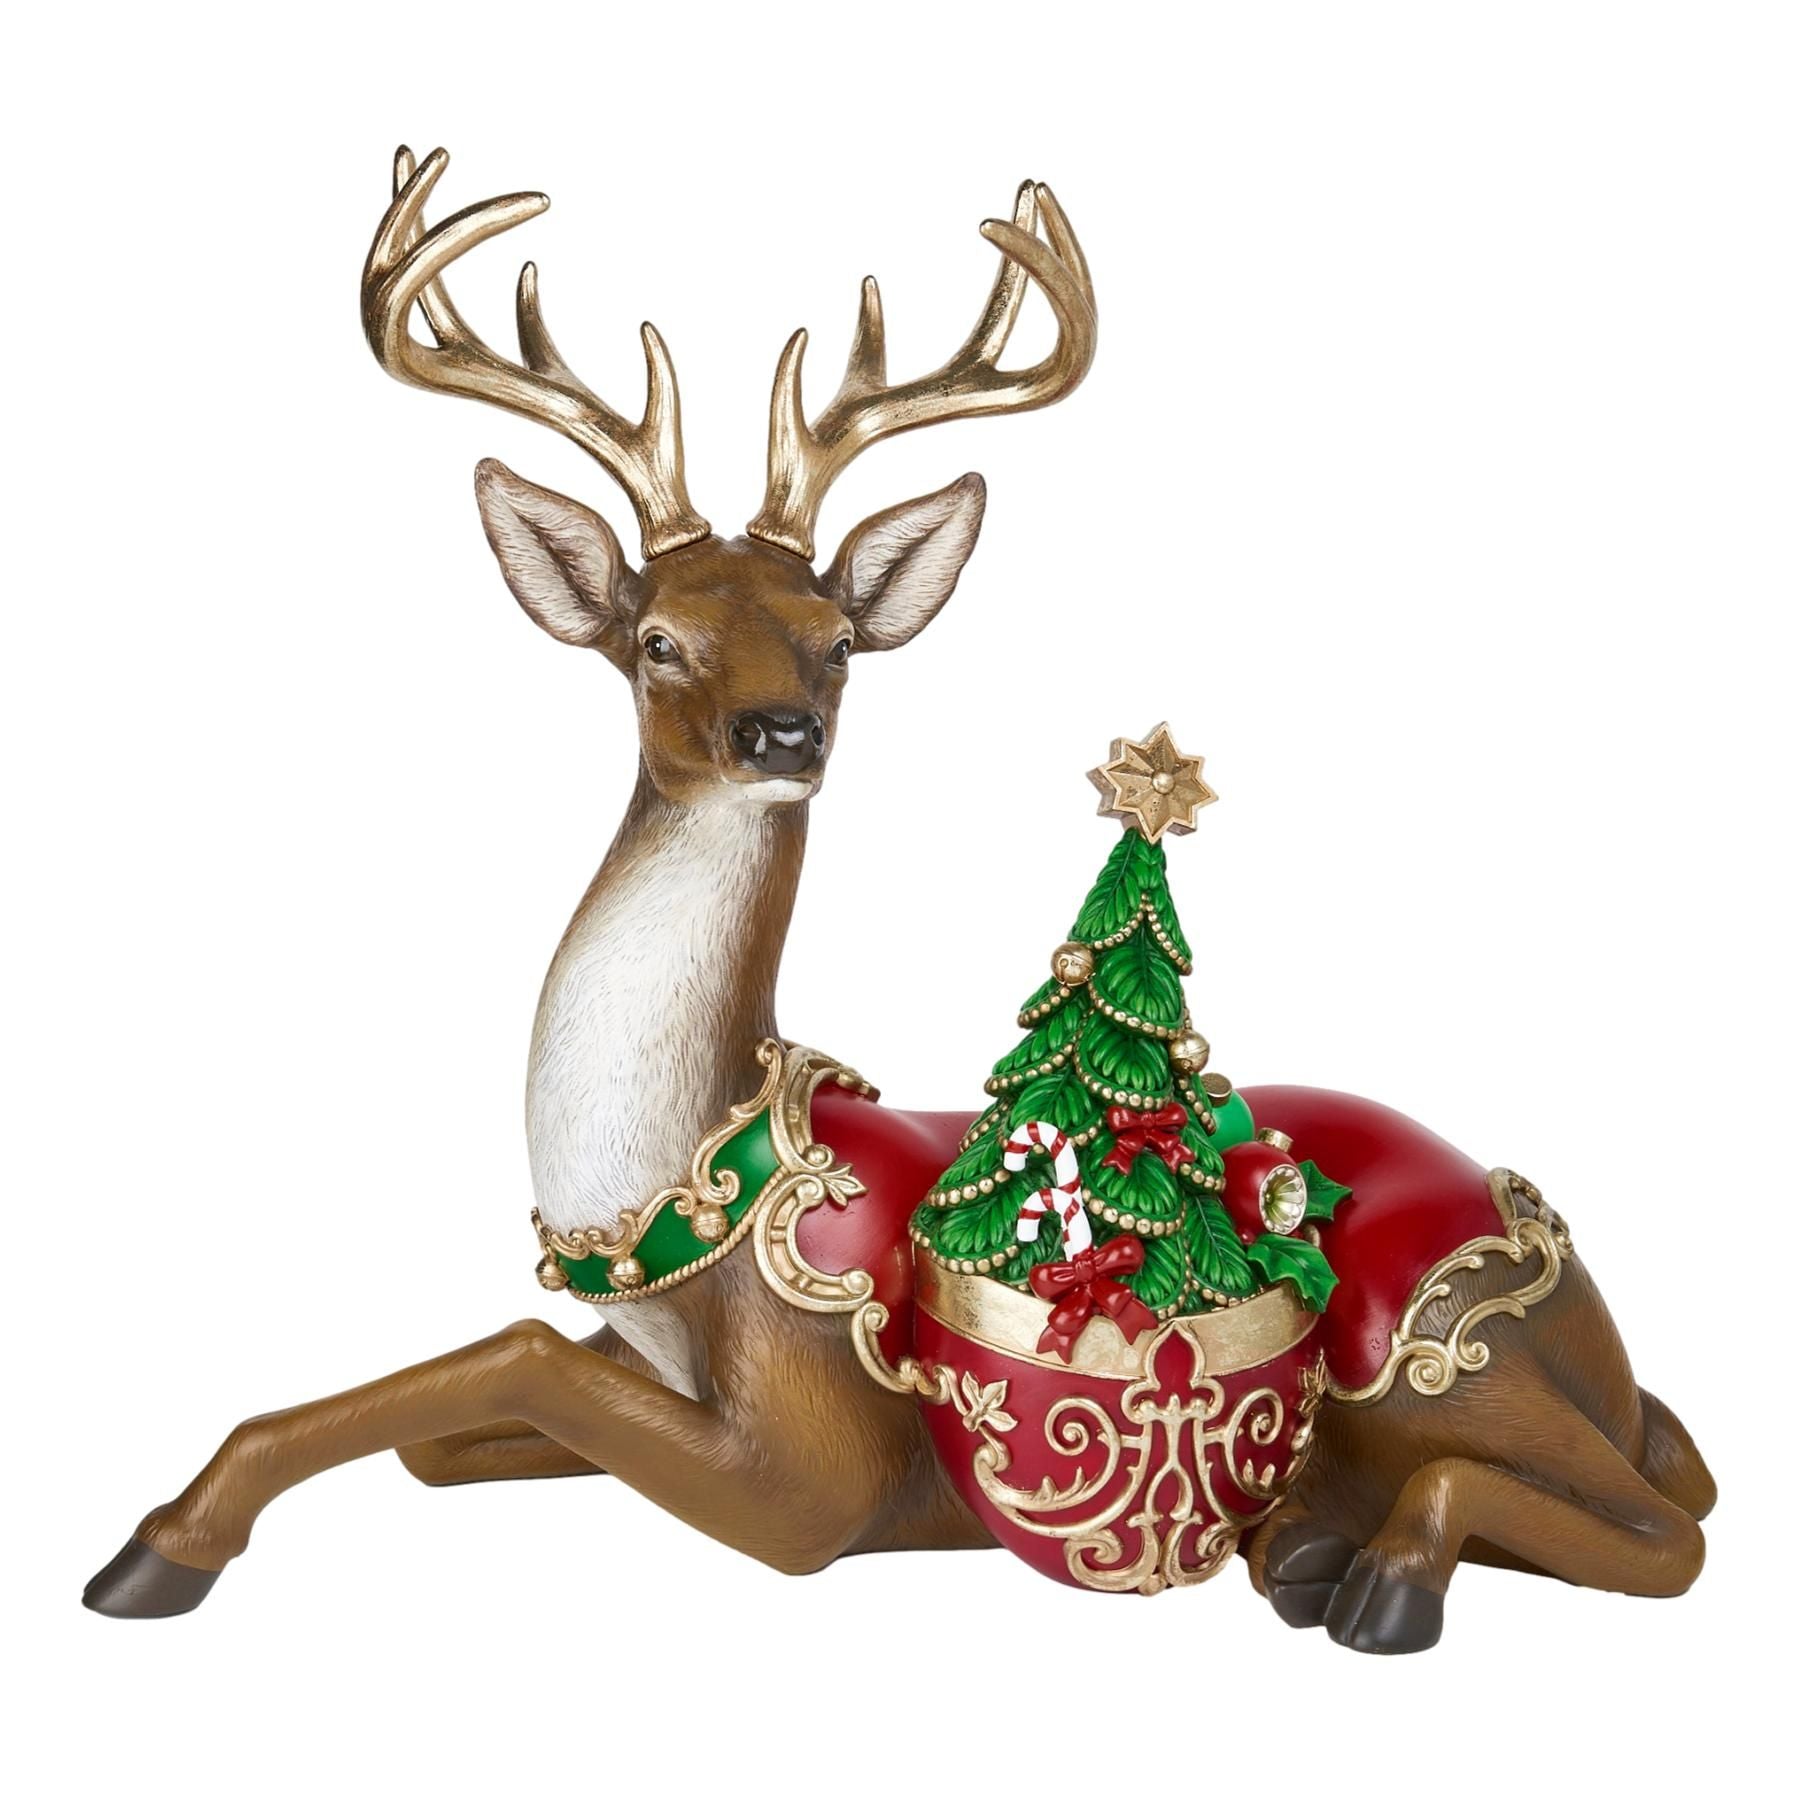 Baroque Sitting Deer - My Christmas